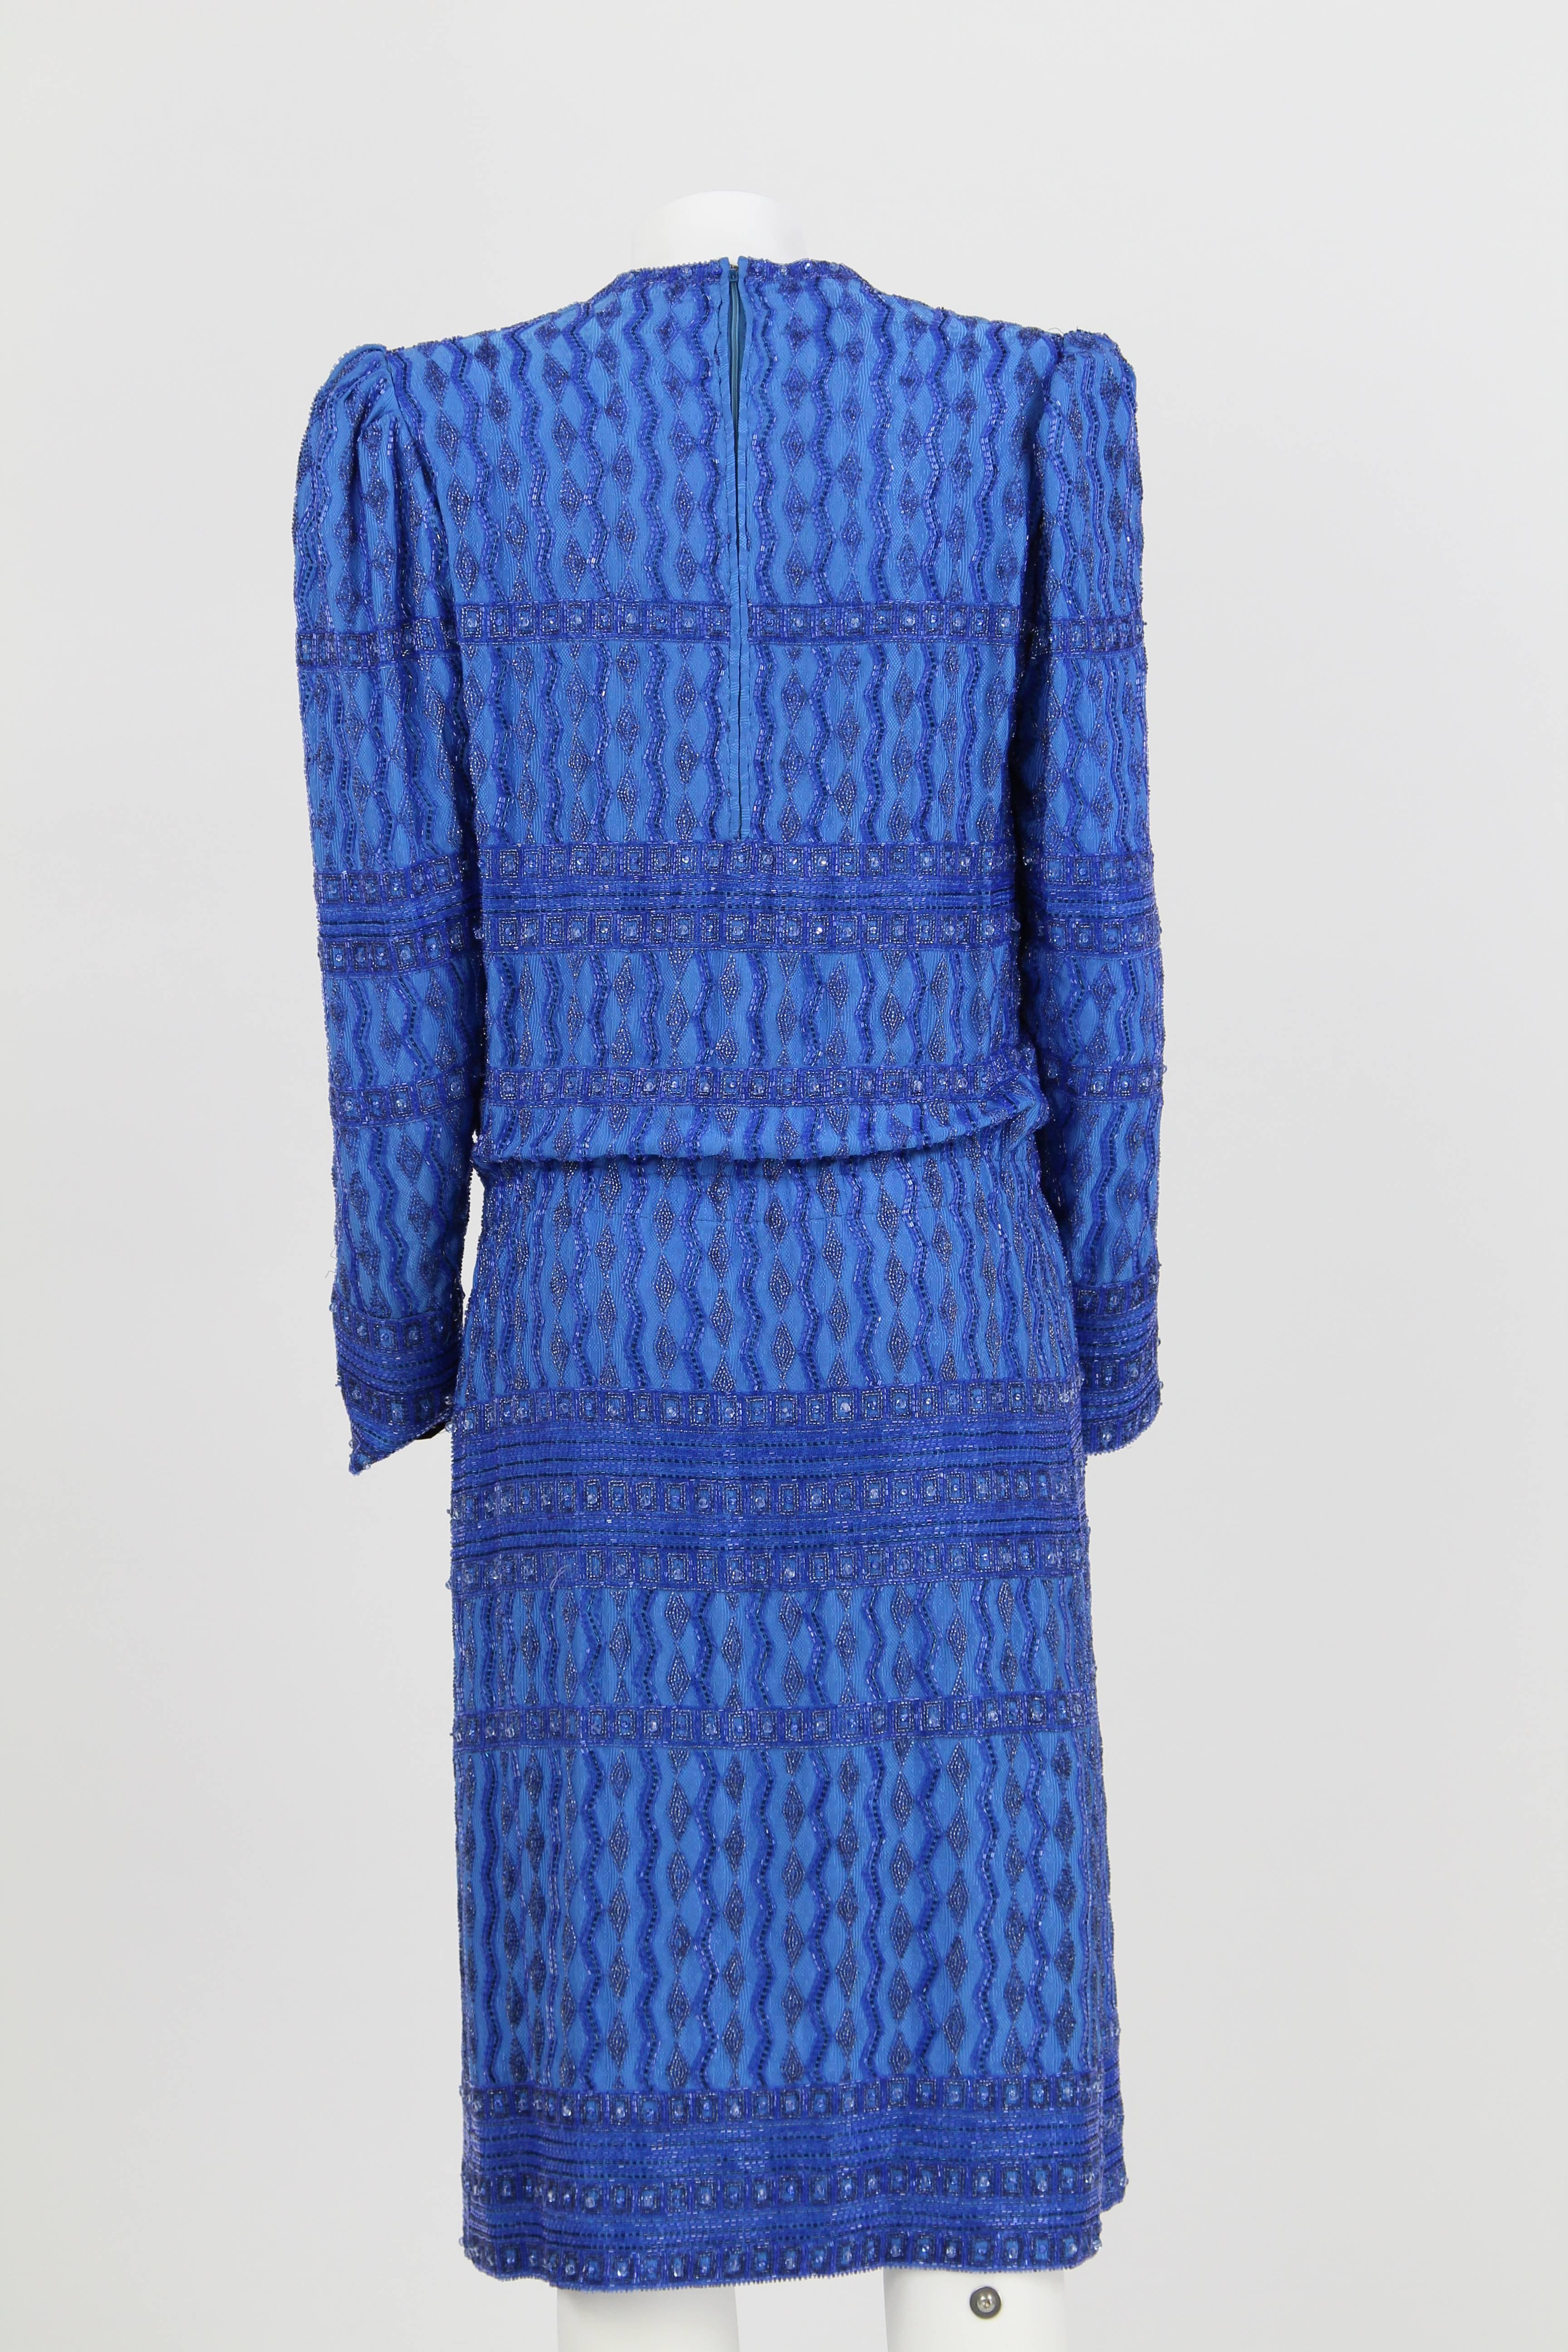 Blue Artisanal Italian Sequined Dress